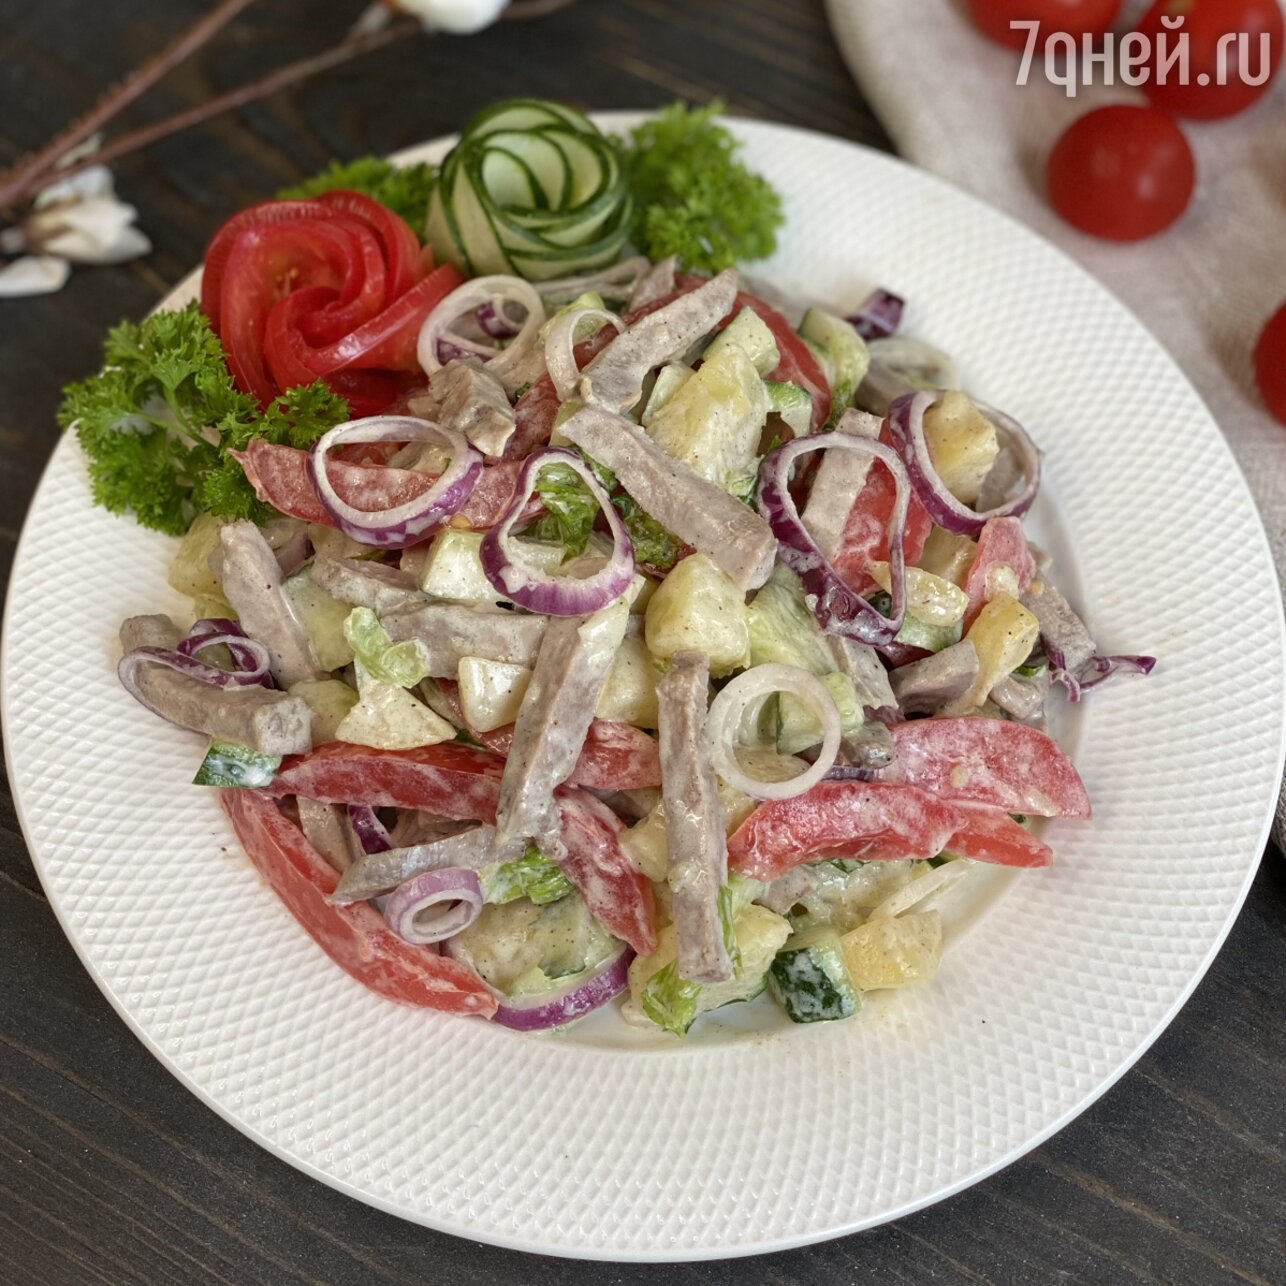 Вкусный салат с языком говяжьим, свежим огурцом и шампиньонами